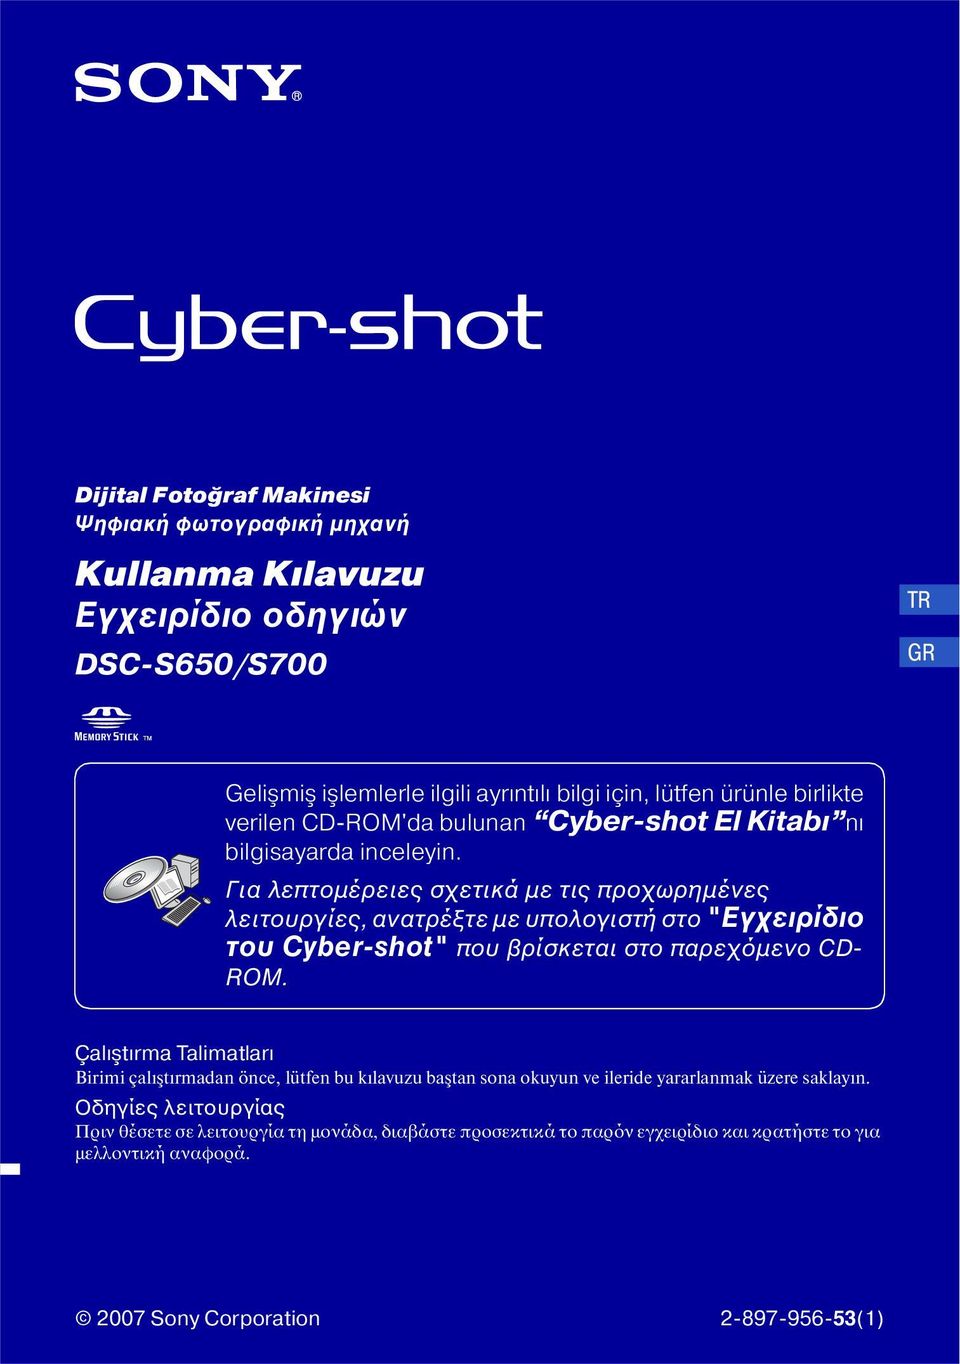 Για λεπτομέρειες σχετικά με τις προχωρημένες λειτουργίες, ανατρέξτε με υπολογιστή στο "Εγχειρίδιο του Cyber-shot" που βρίσκεται στο παρεχόμενο CD- ROM.